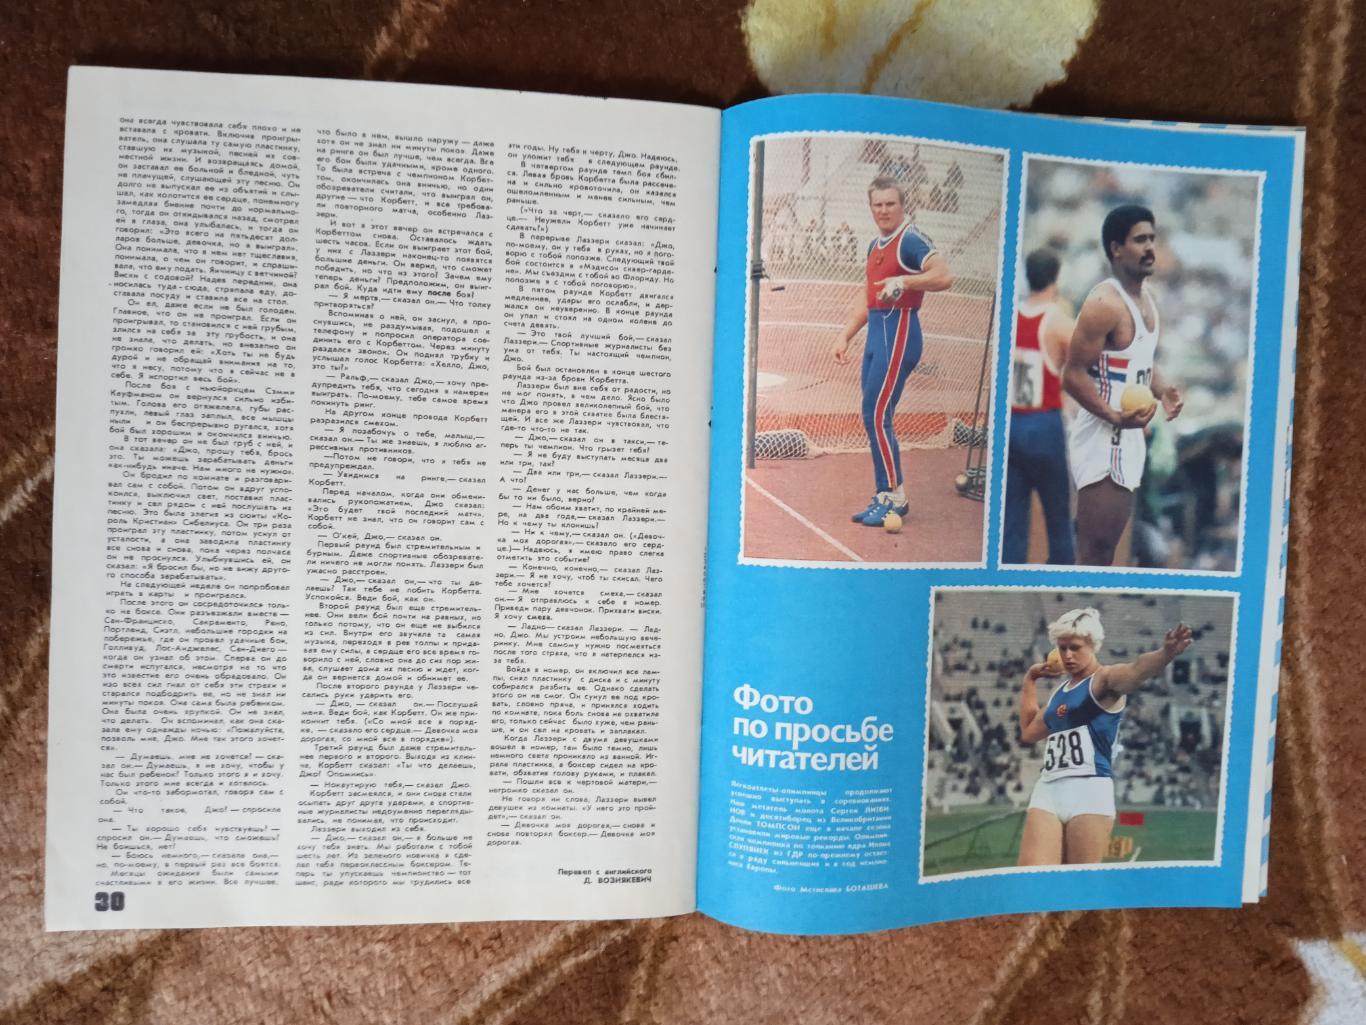 Журнал.Физкультура и спорт № 8 1982 г. (ФиС). 2